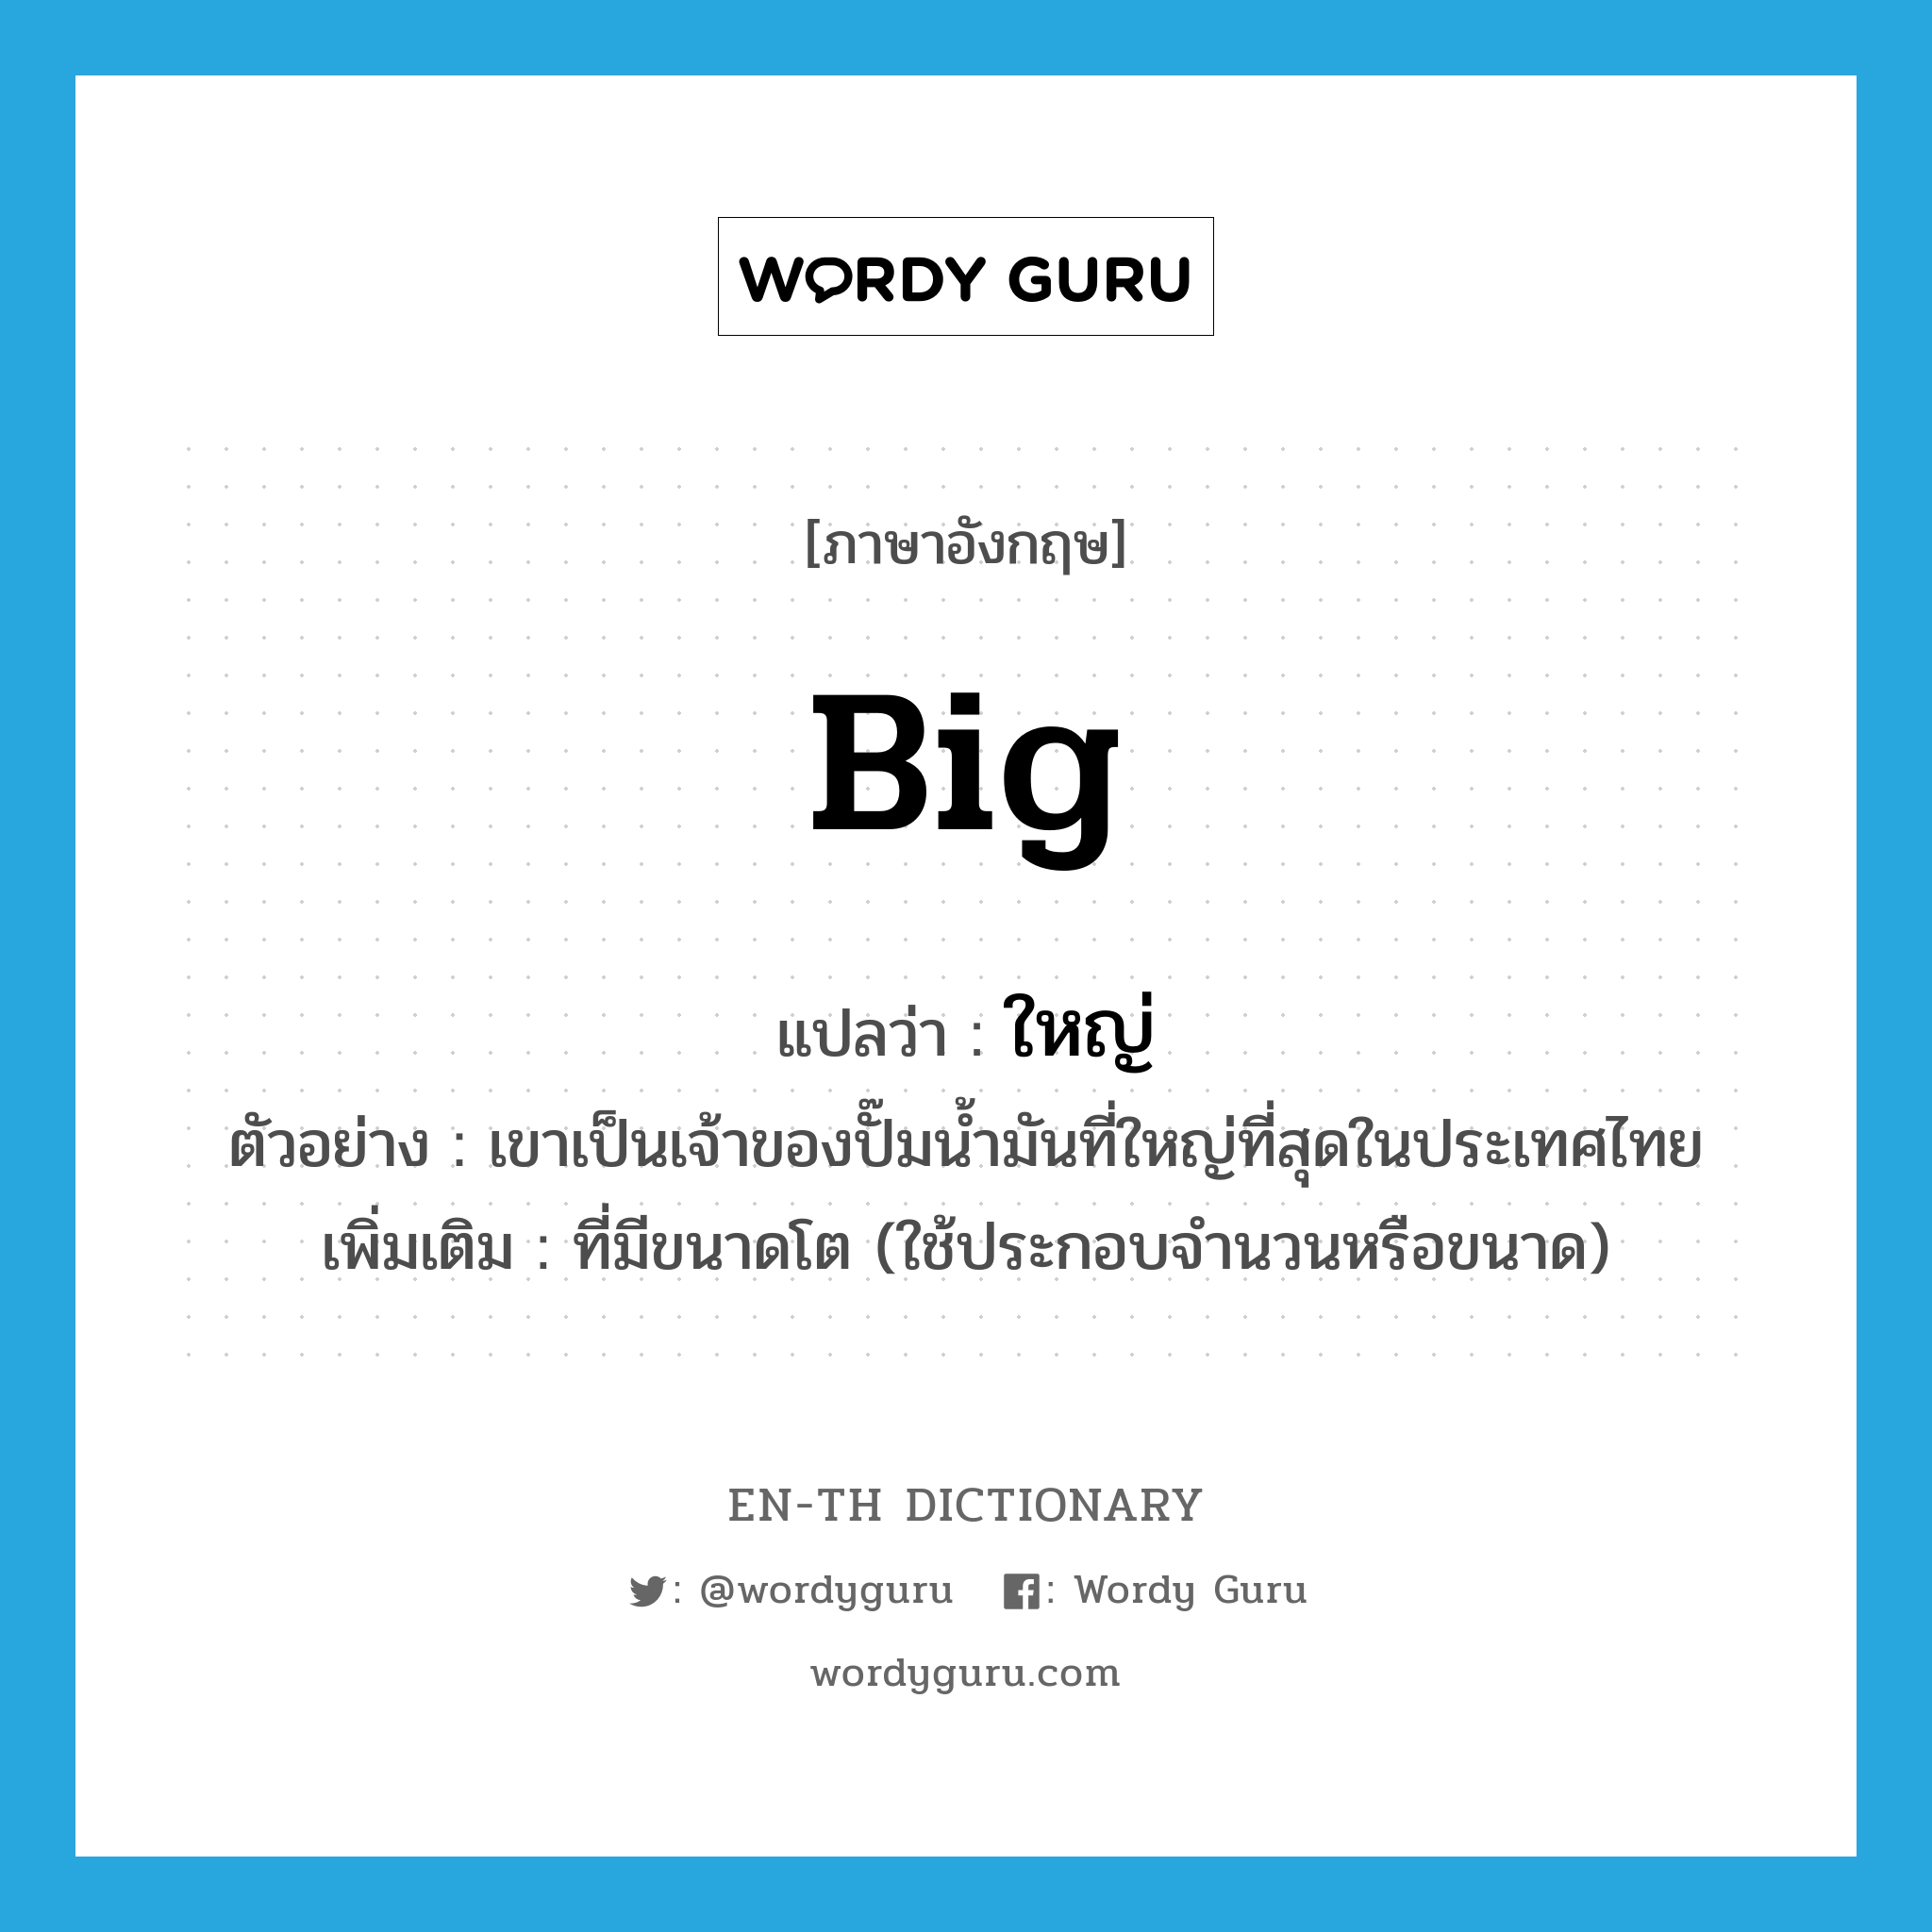 big แปลว่า?, คำศัพท์ภาษาอังกฤษ big แปลว่า ใหญ่ ประเภท ADJ ตัวอย่าง เขาเป็นเจ้าของปั๊มน้ำมันที่ใหญ่ที่สุดในประเทศไทย เพิ่มเติม ที่มีขนาดโต (ใช้ประกอบจำนวนหรือขนาด) หมวด ADJ